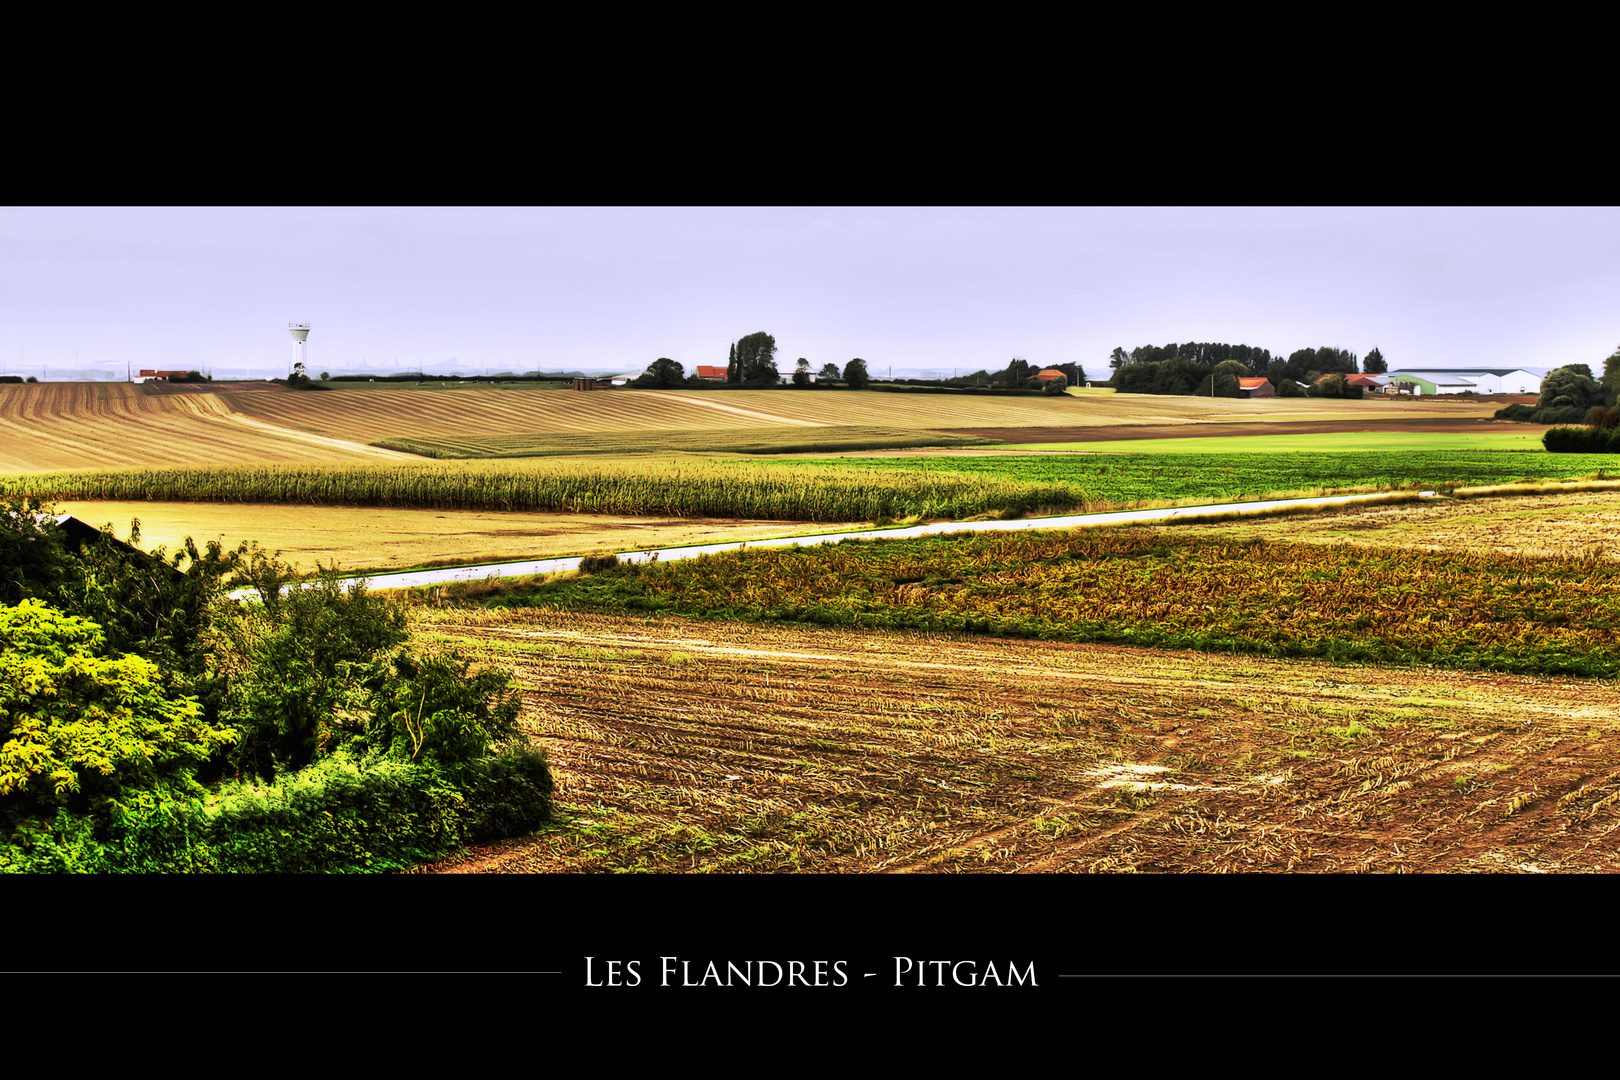 Les Flandres - Pitgam